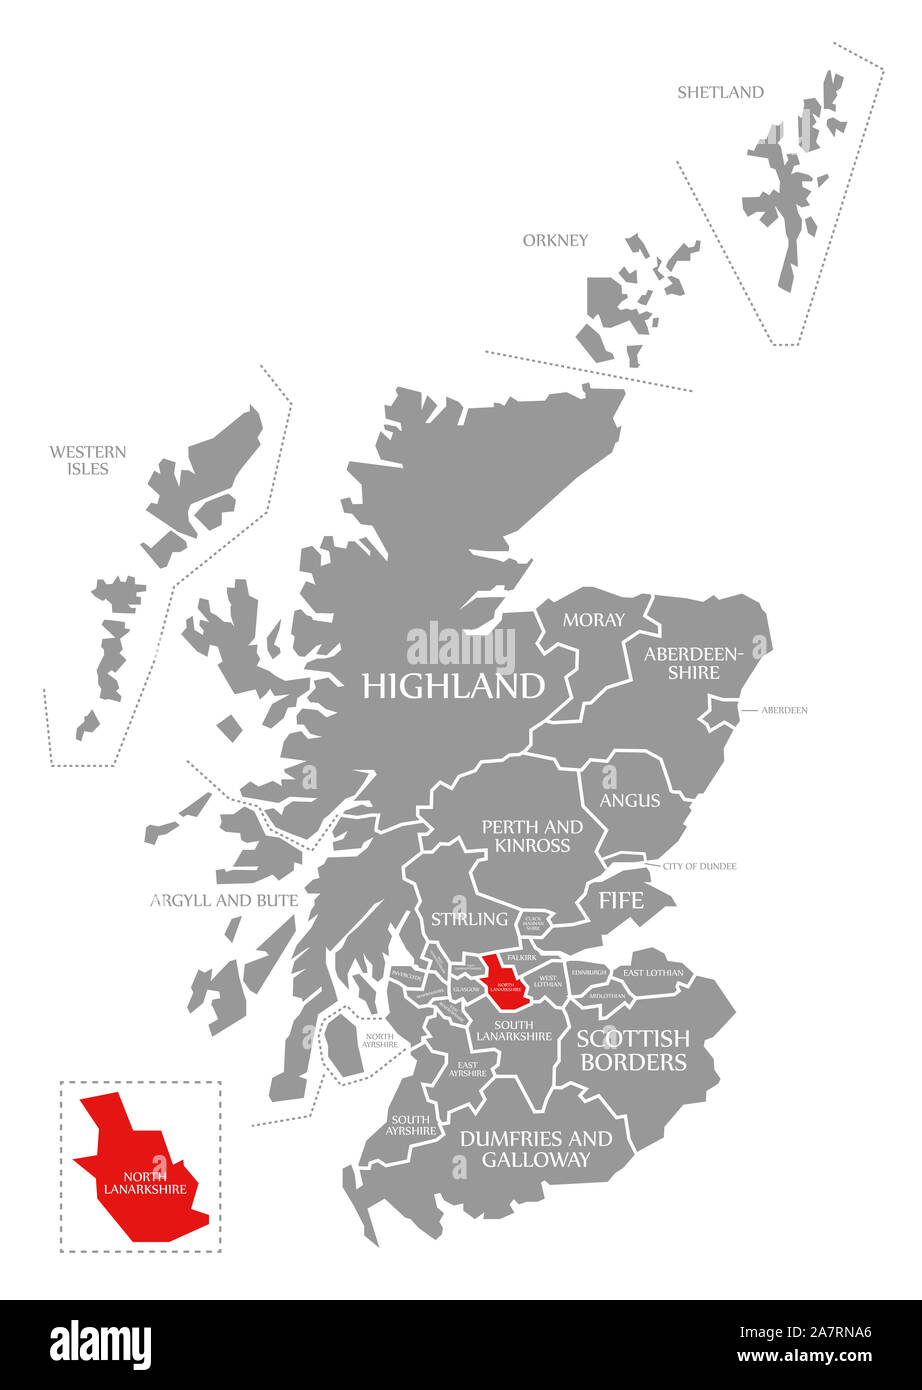 North Lanarkshire evidenziata in rosso nella mappa della Scozia UK Foto Stock